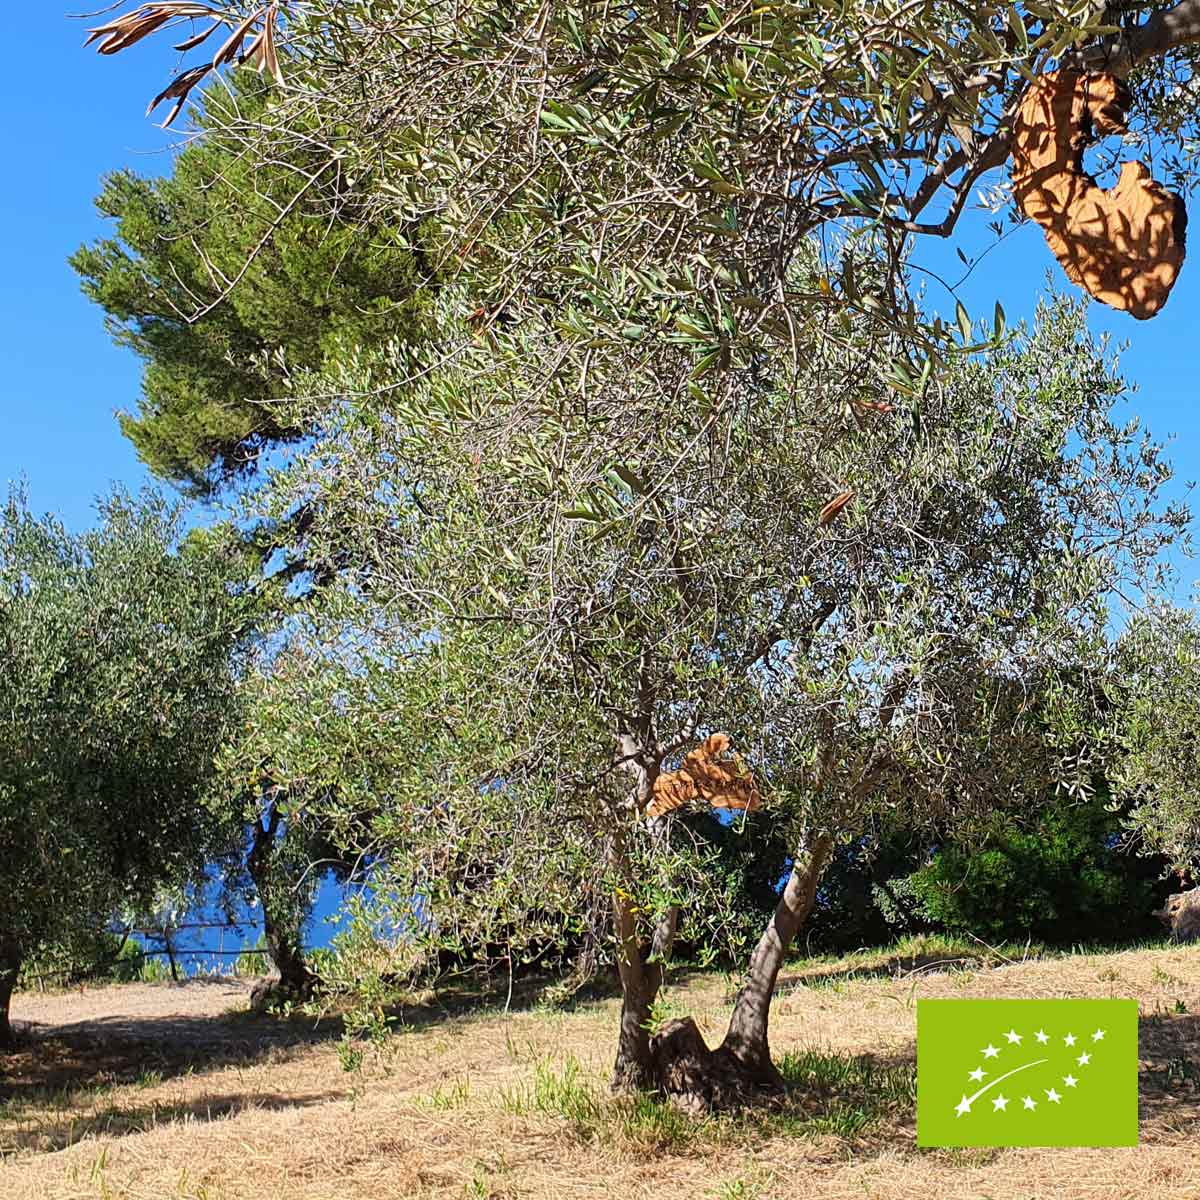 Segni di legno - Adotta un ulivo biologico in Italia